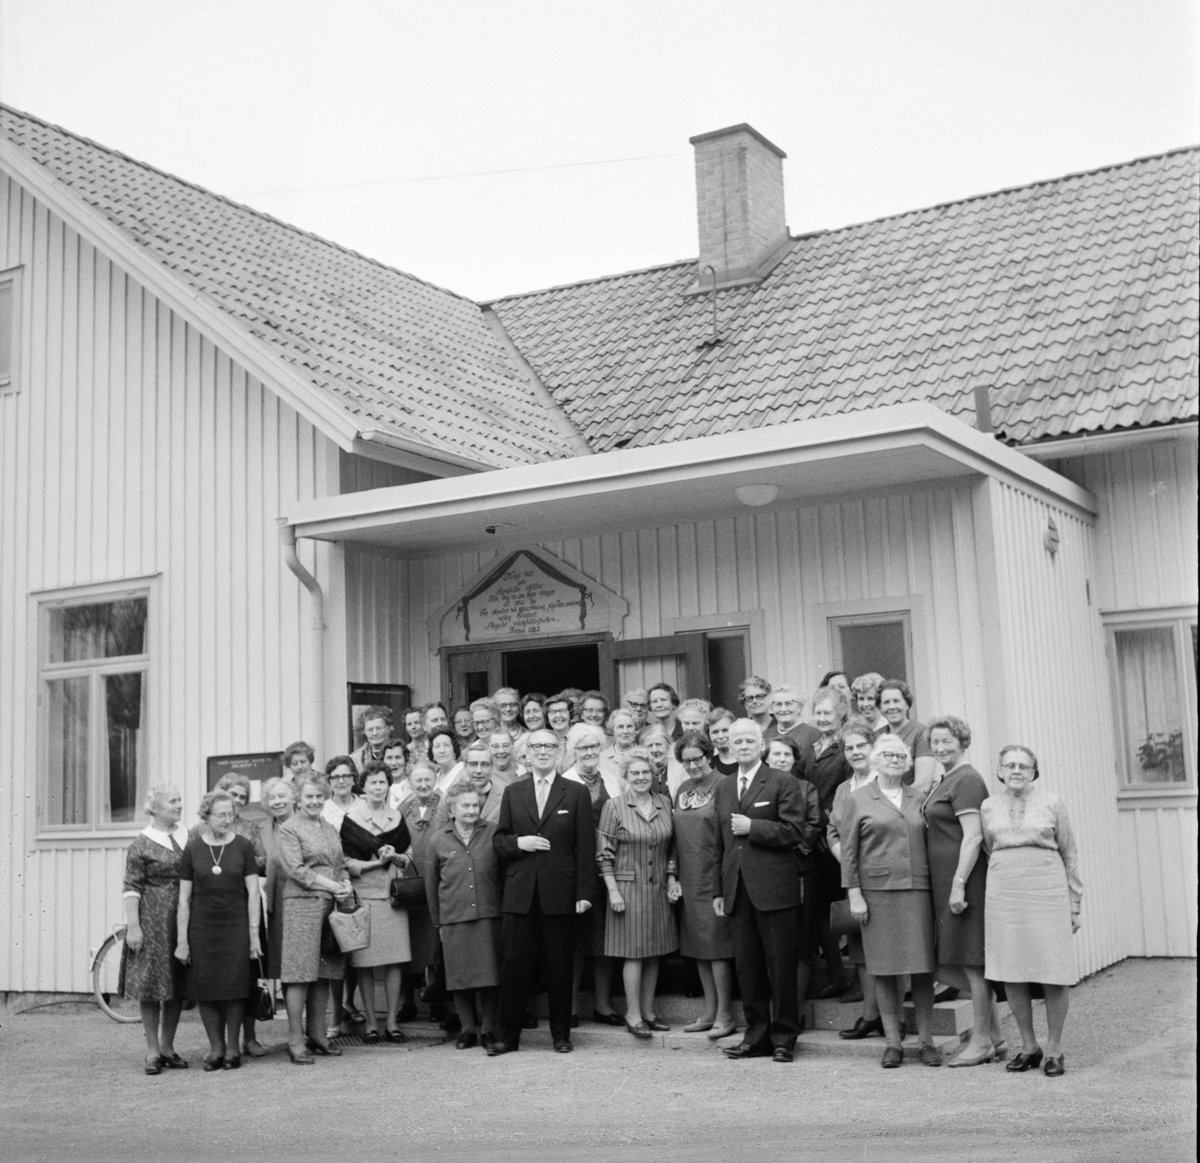 Arbrå,
Sykretsdag i sockenstugan,
8 Maj 1969